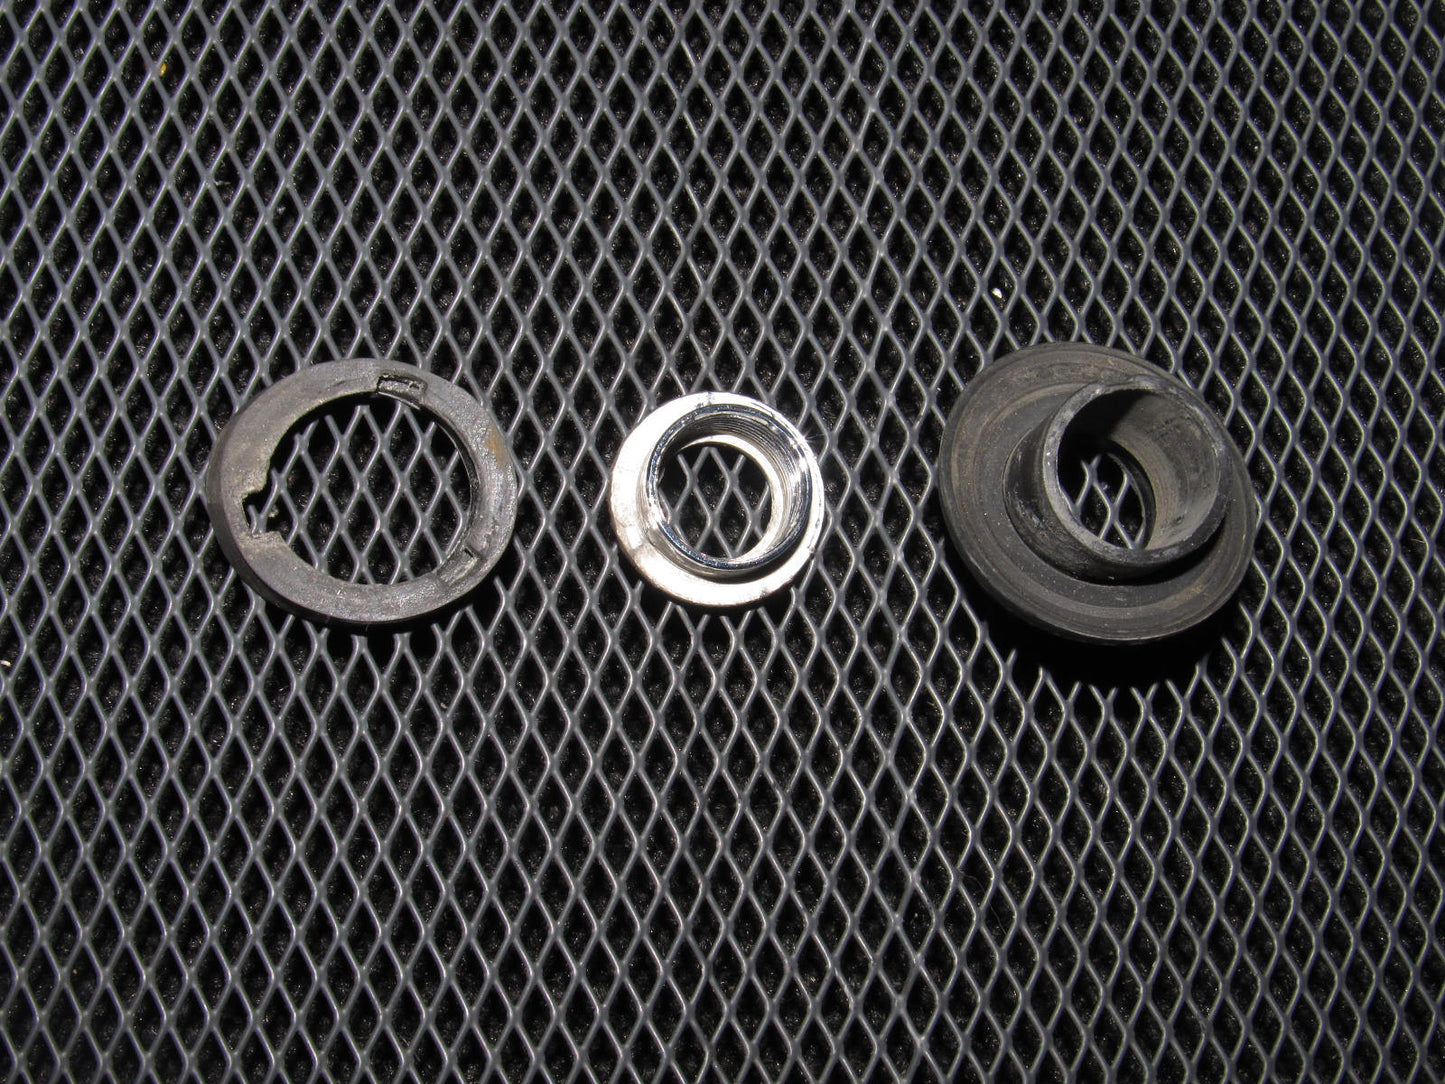 86-92 Toyota Supra OEM Antenna Gromment Bezel Ring